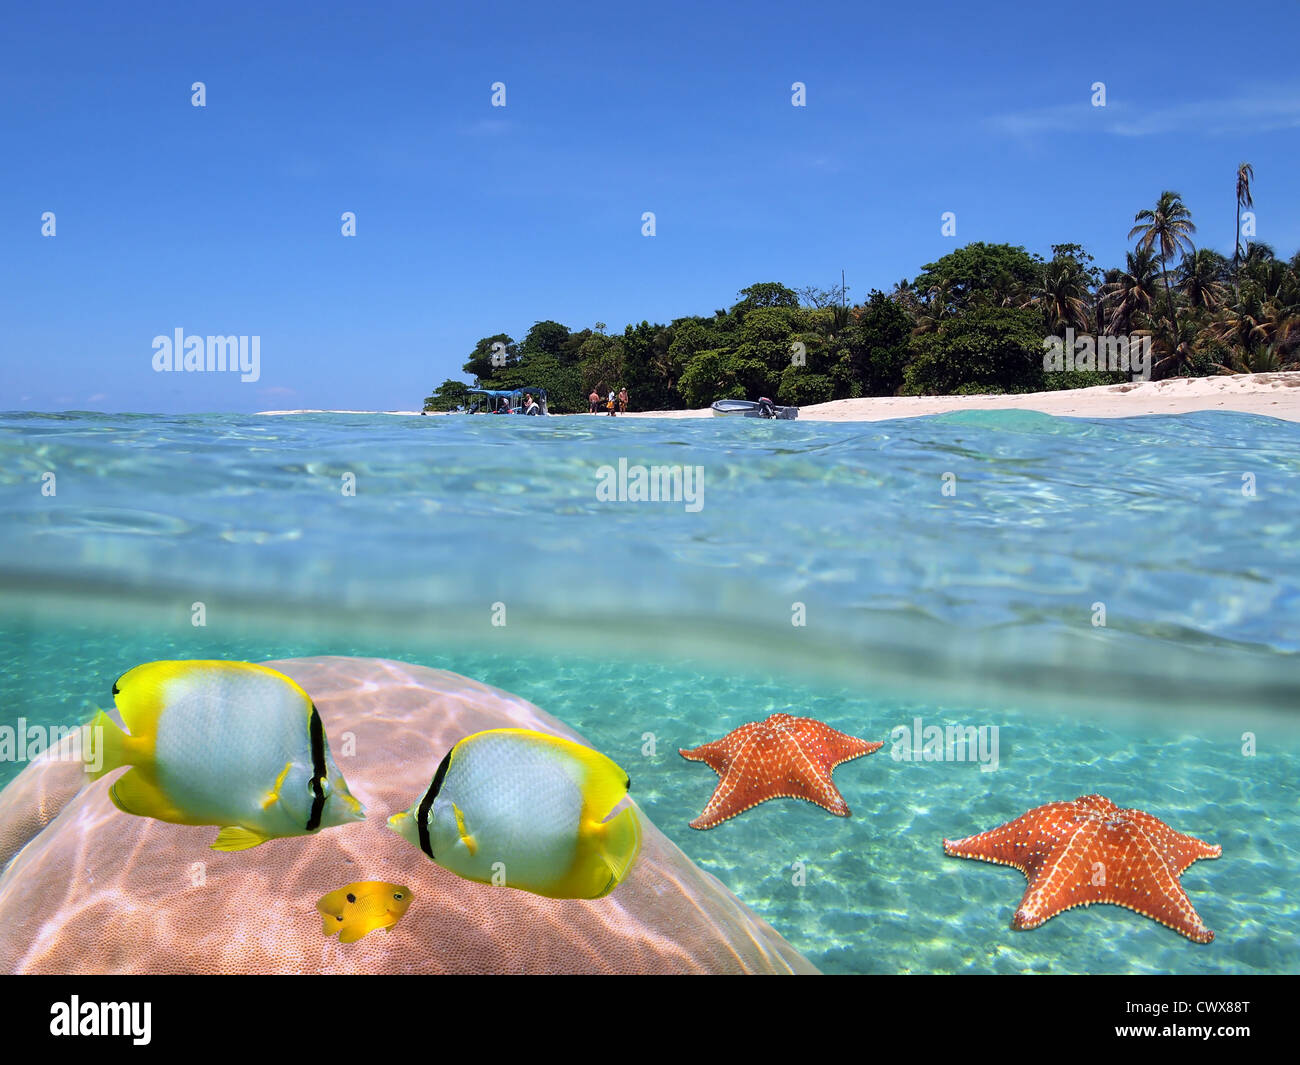 Tropische Insel mit Bootstour auf dem Strand und Fisch mit Korallen und Seesterne Unterwasser, geteilte Ansicht oberhalb und unterhalb der Oberfläche, dem Karibischen Meer Stockfoto